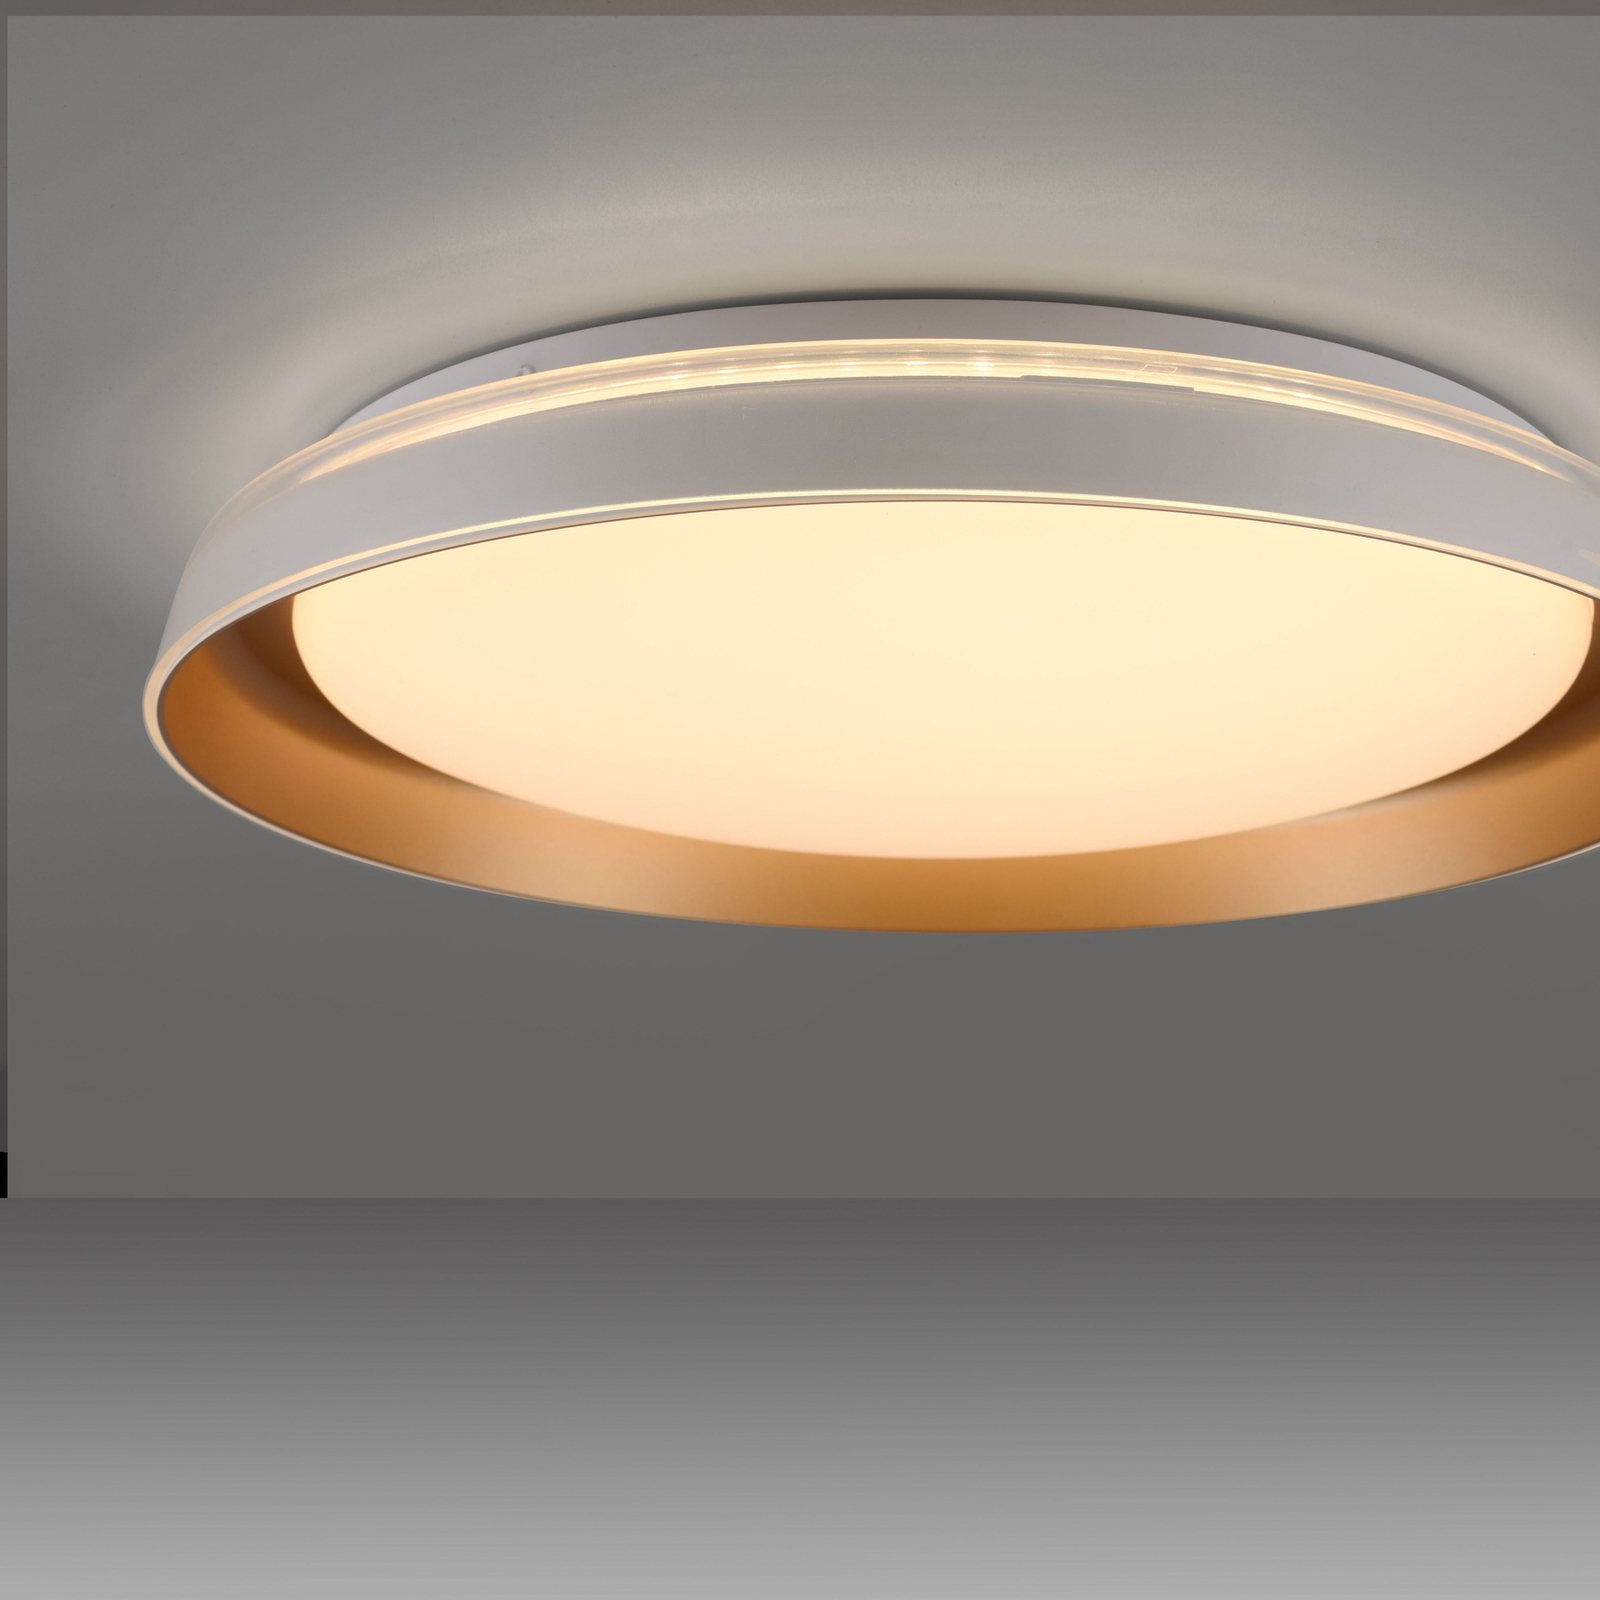 JUST LIGHT. Sati LED mennyezeti lámpa, műanyag, fehér/brass